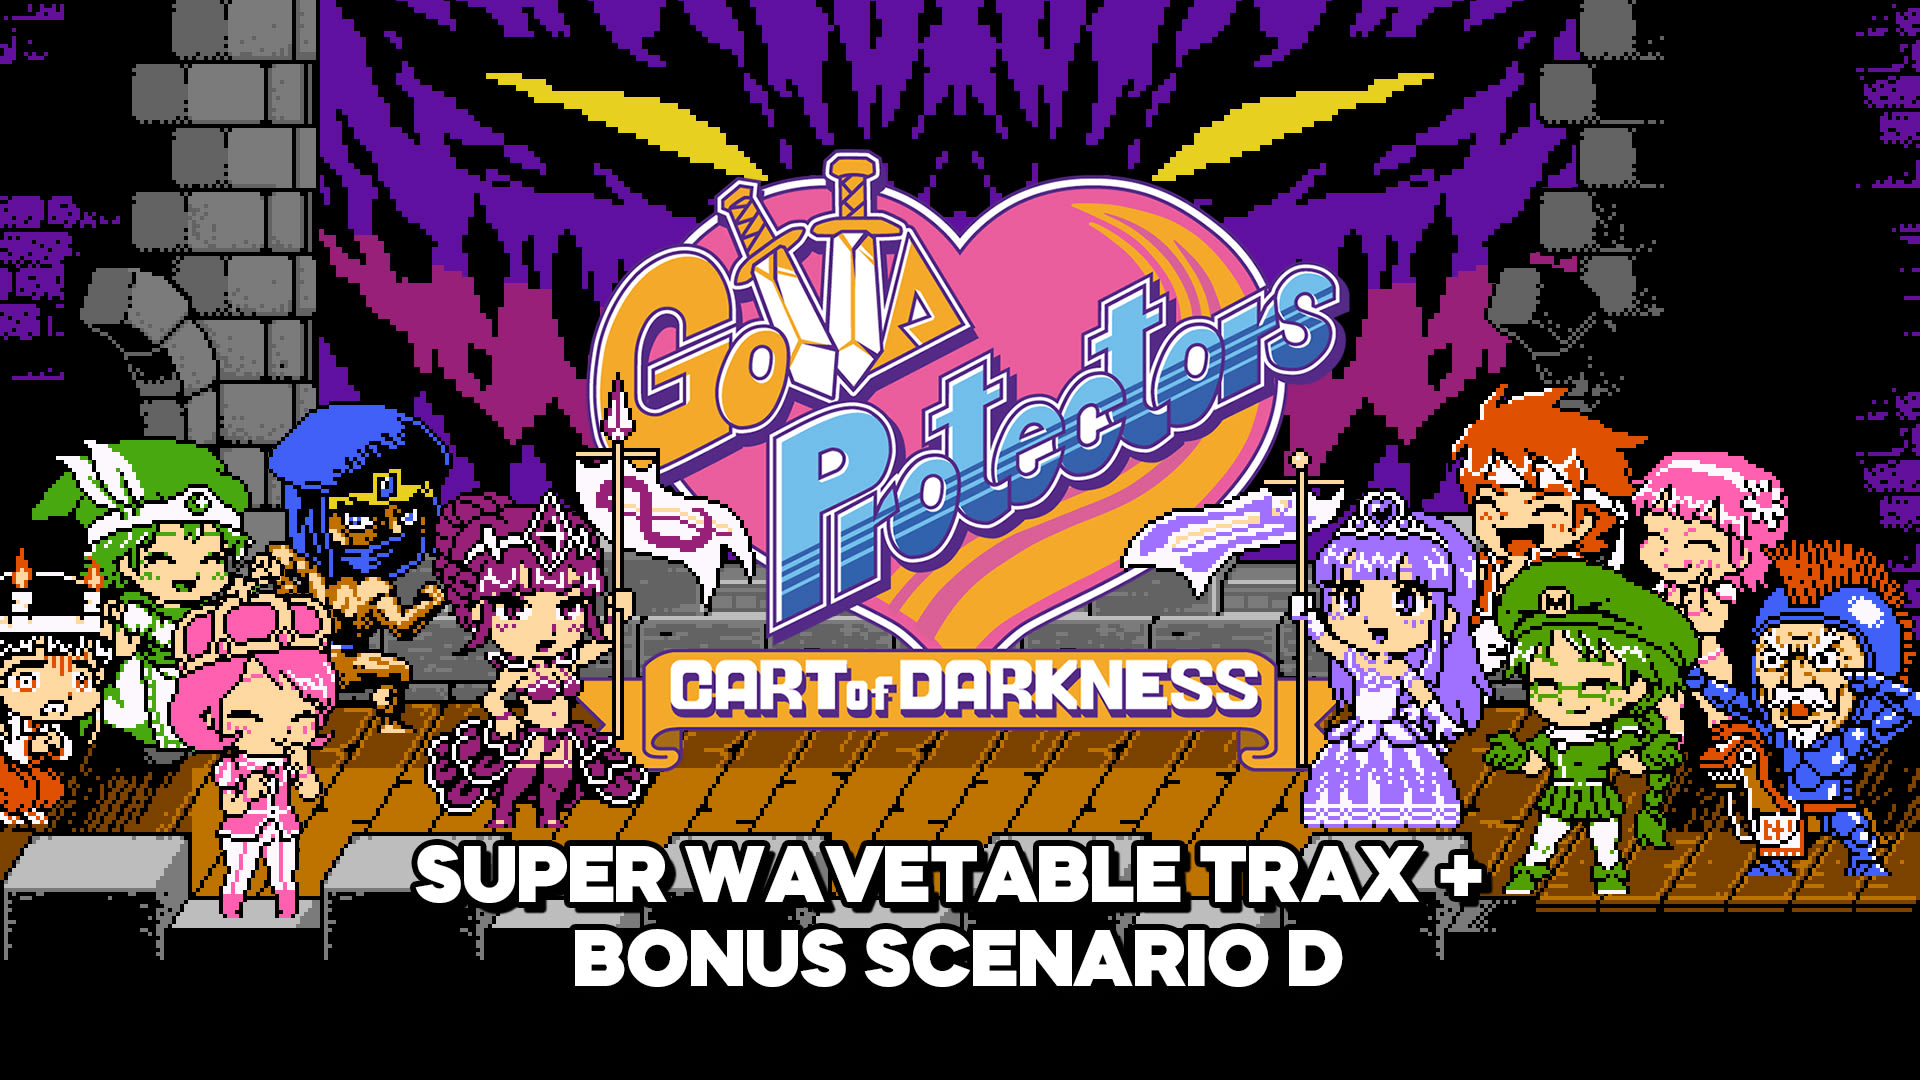 Gotta Protectors: Cart of Darkness DLC Pack 4: Super Wavetable Trax + Bonus Scenario D